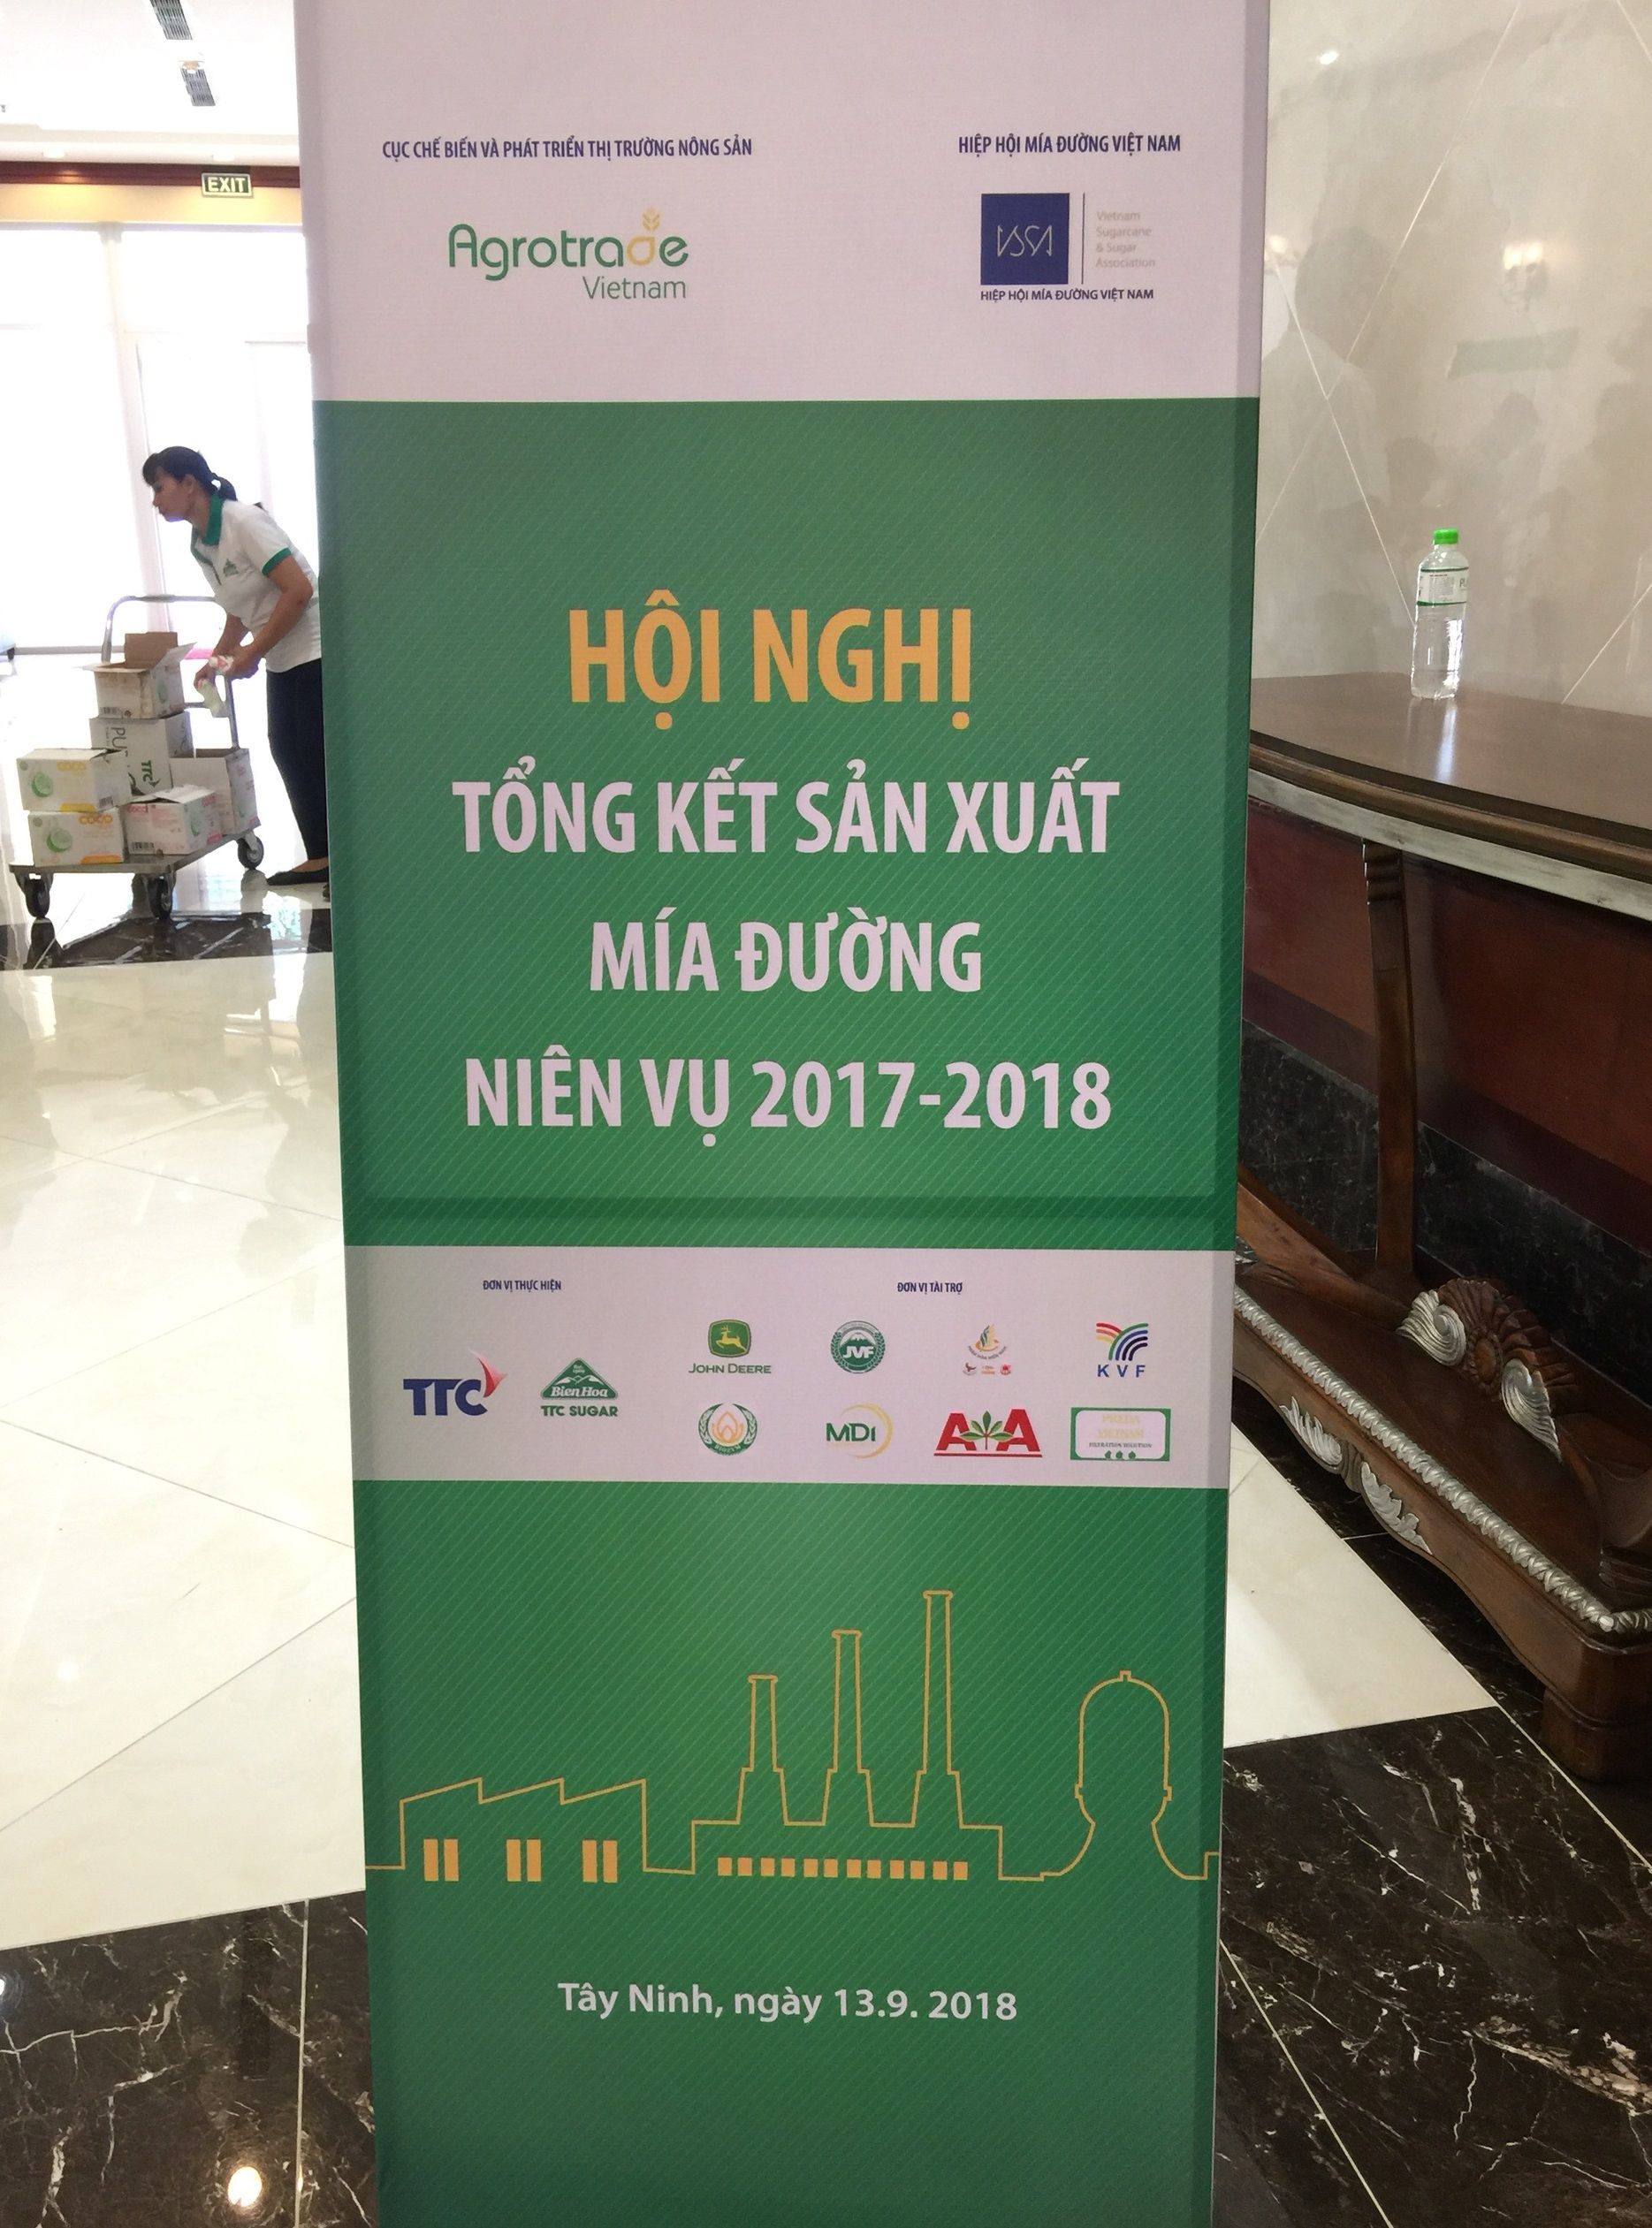 Hội nghị tổng kết sản xuất mía đường niên vụ 2017-2018 